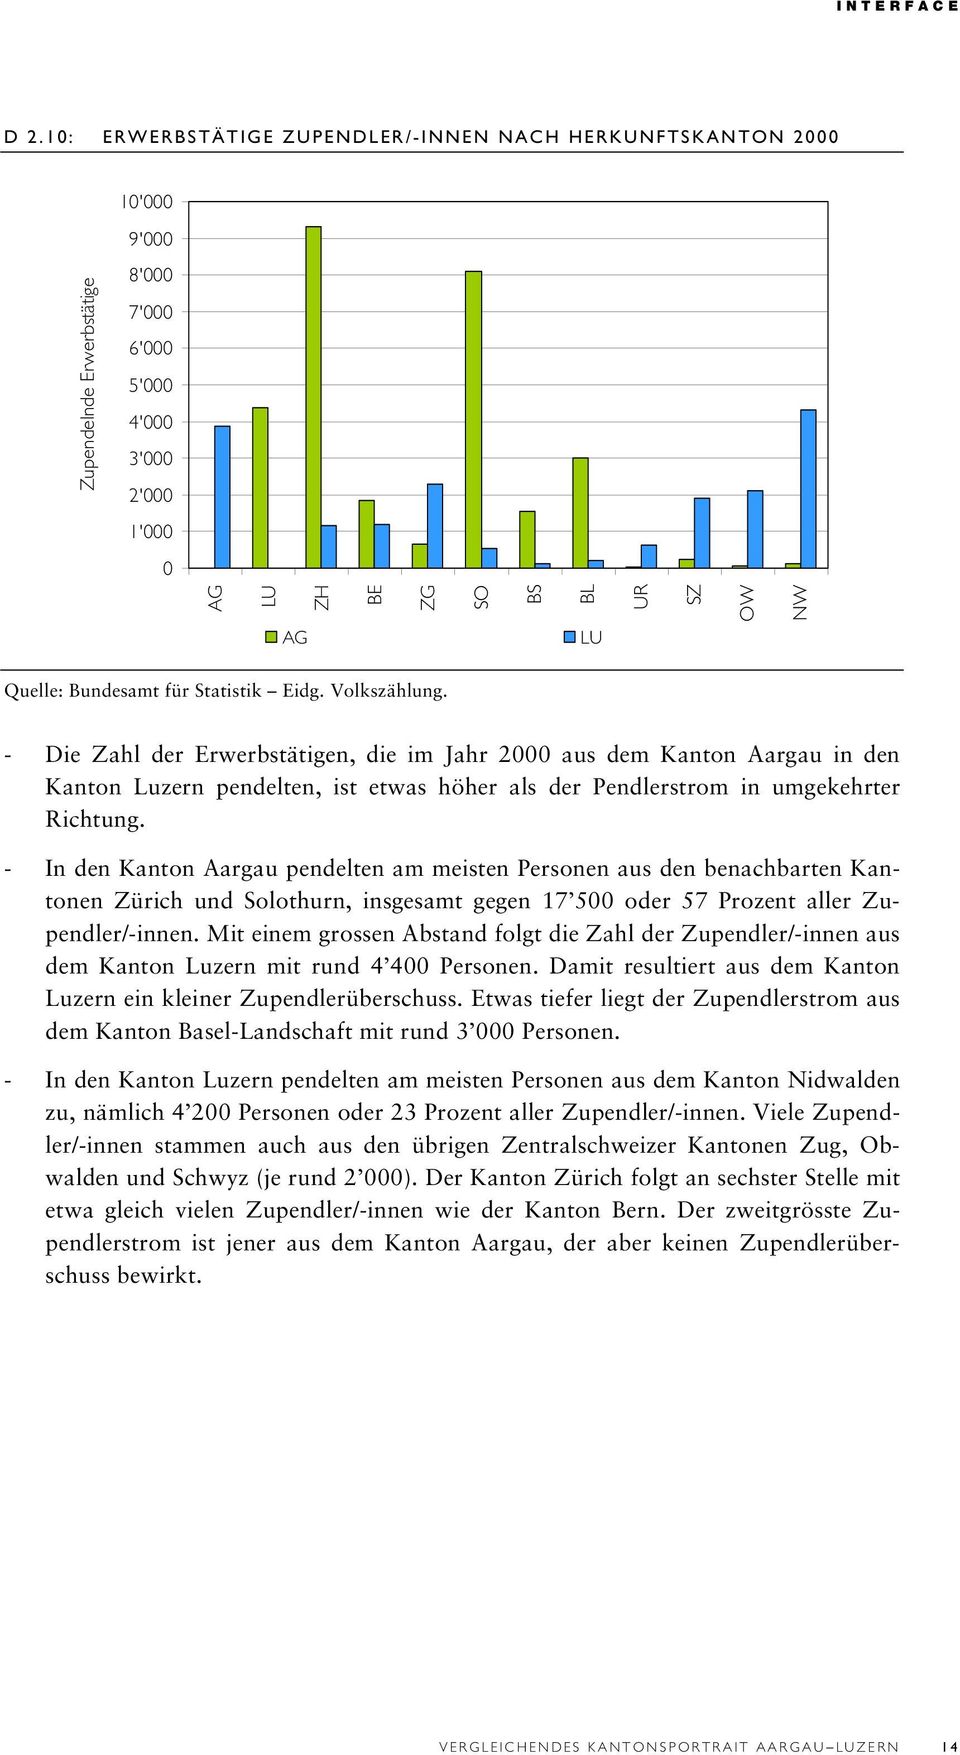 - Die Zahl der Erwerbstätigen, die im Jahr 2000 aus dem Kanton Aargau in den Kanton Luzern pendelten, ist etwas höher als der Pendlerstrom in umgekehrter Richtung.